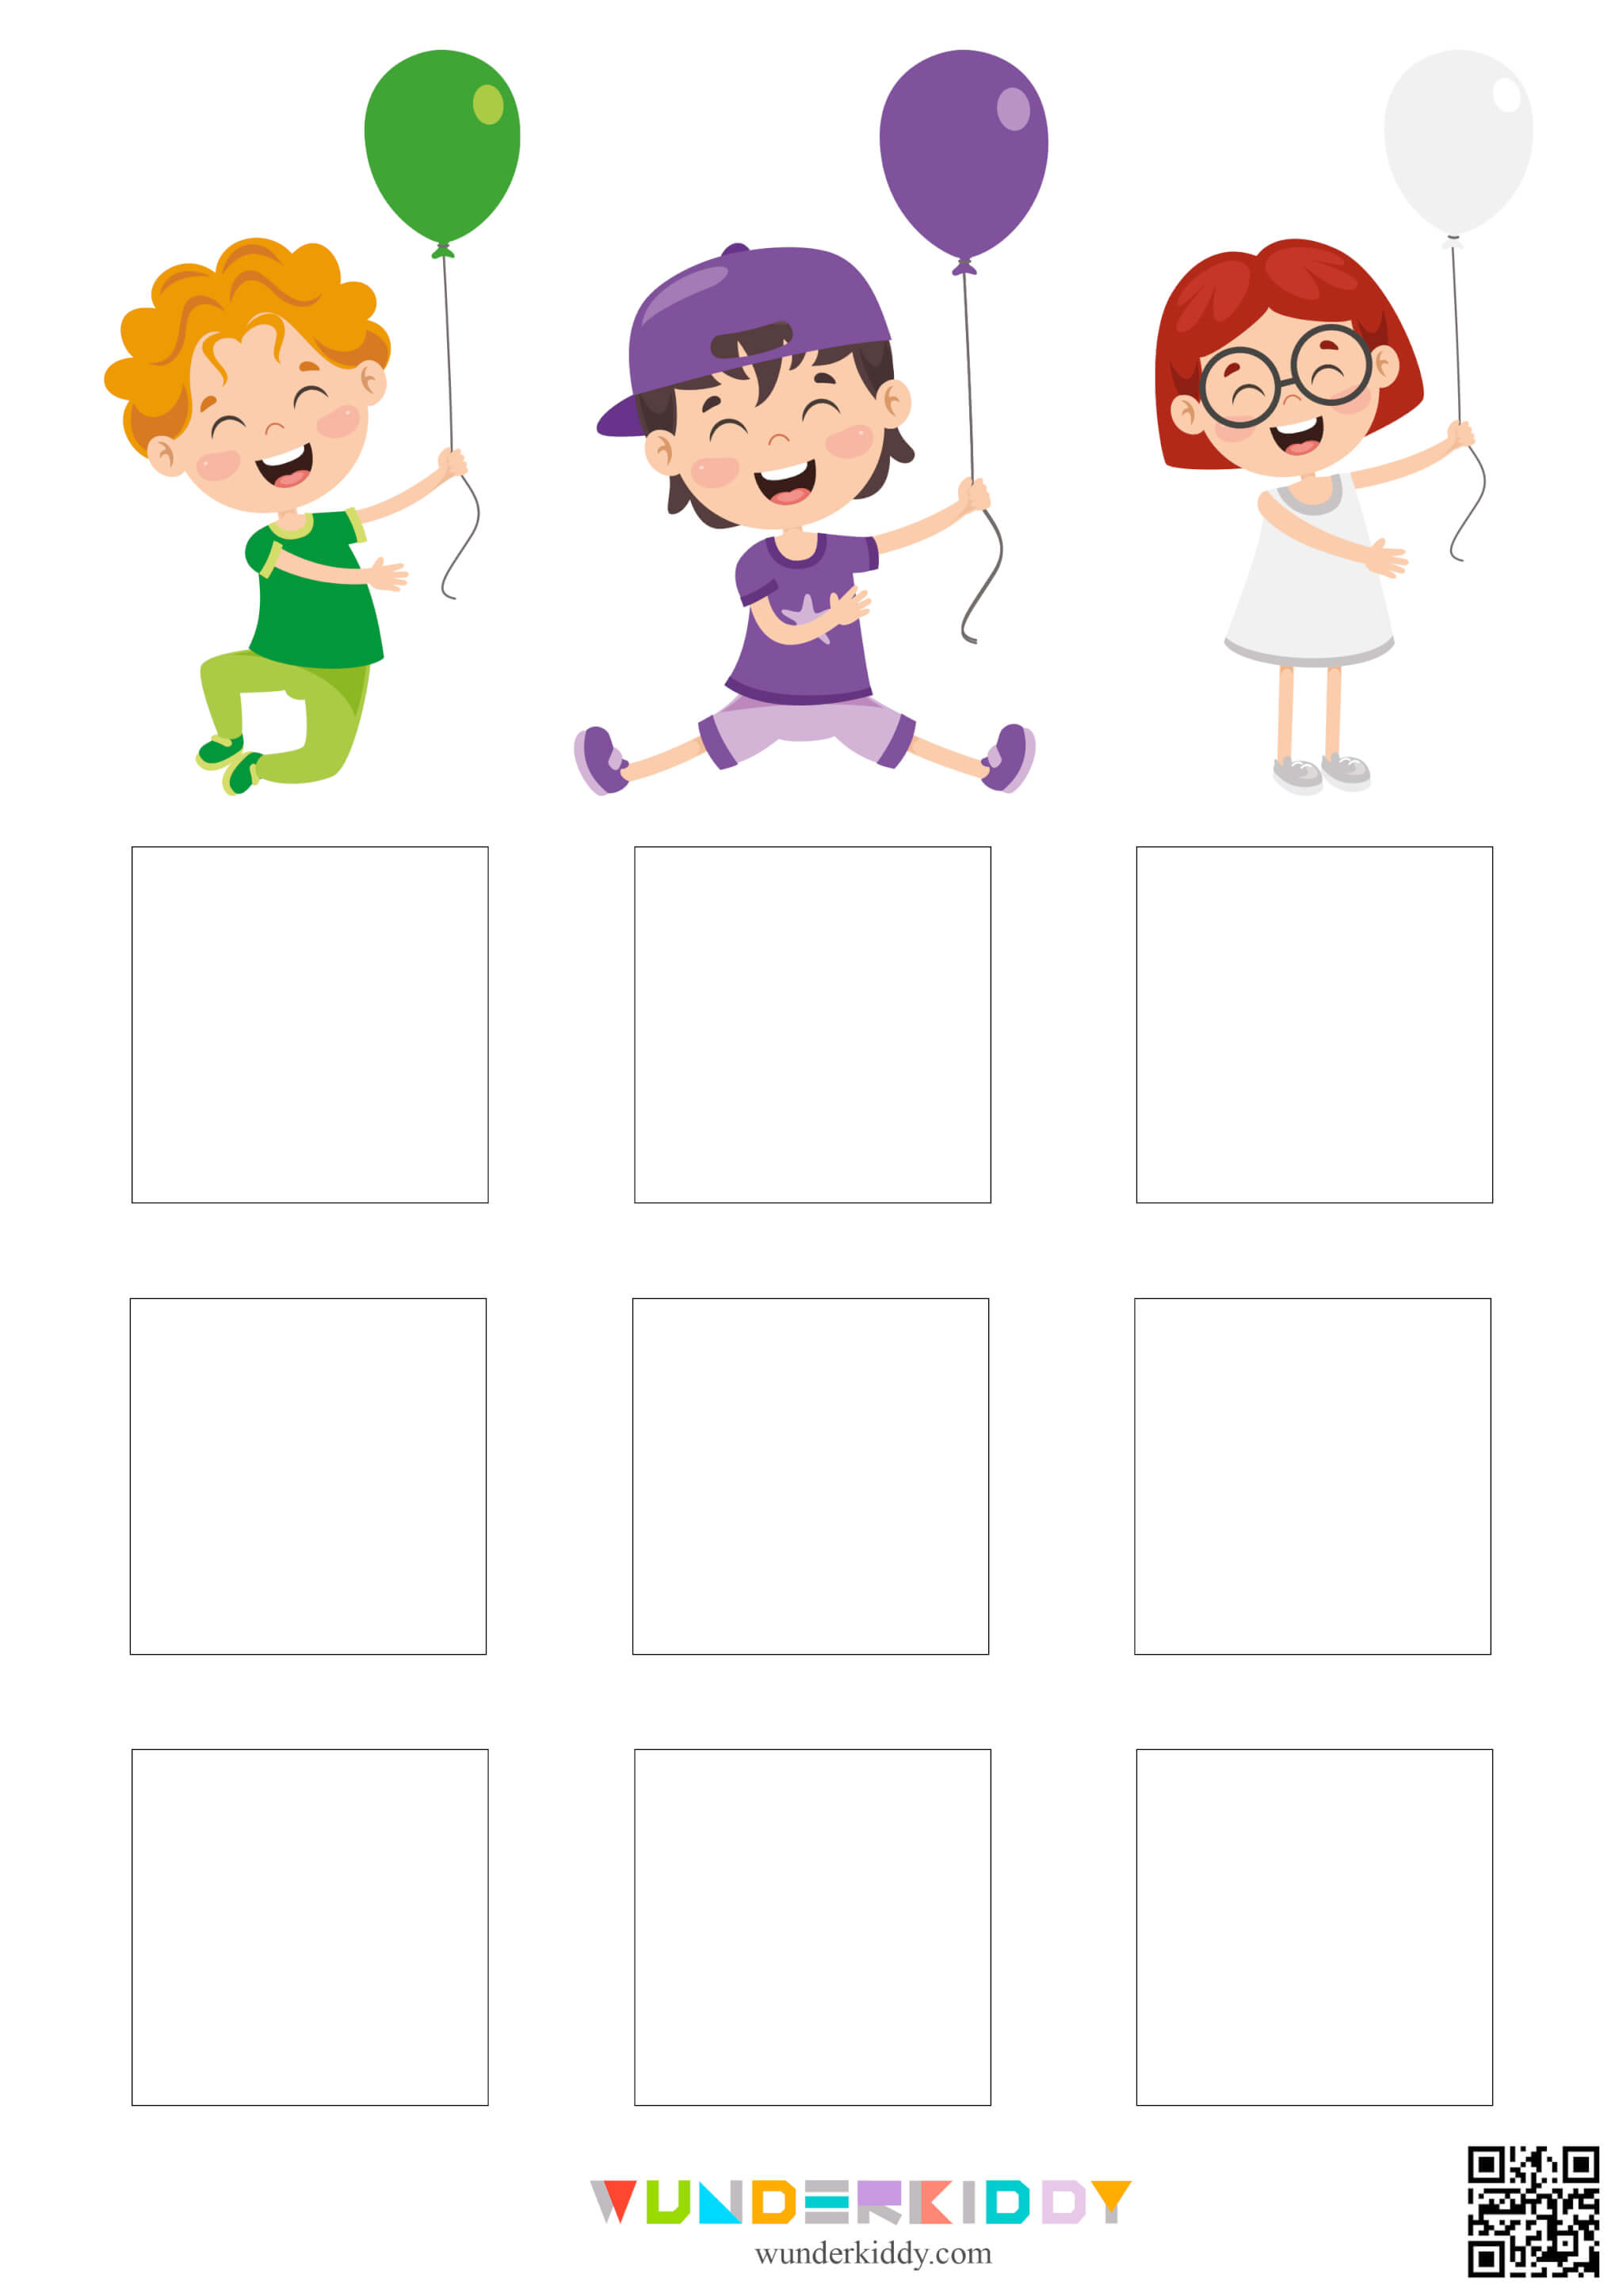 Color Matching Worksheets for Kindergarten - Image 4